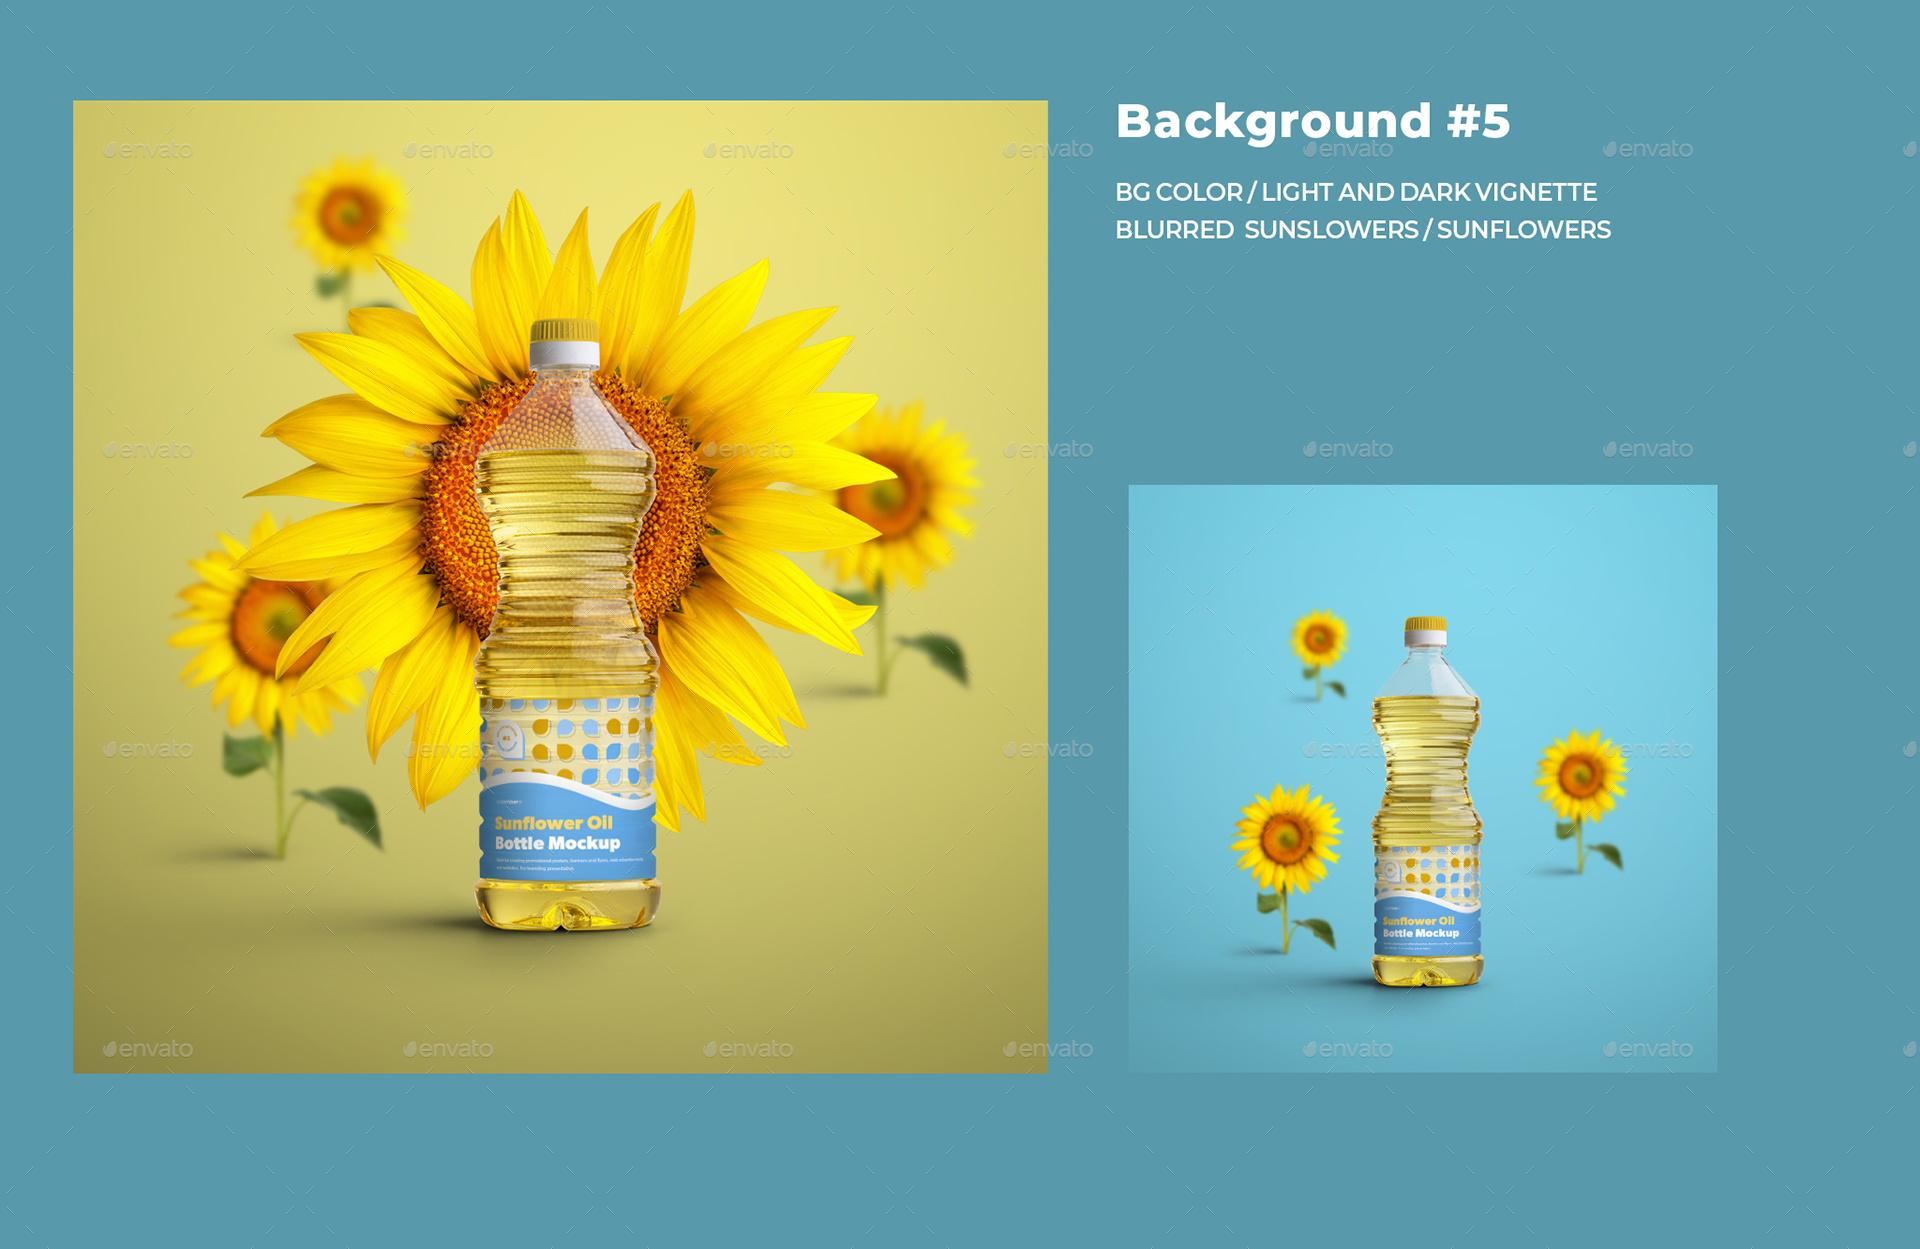 Mockups Plastic Sunflower Oil Bottles